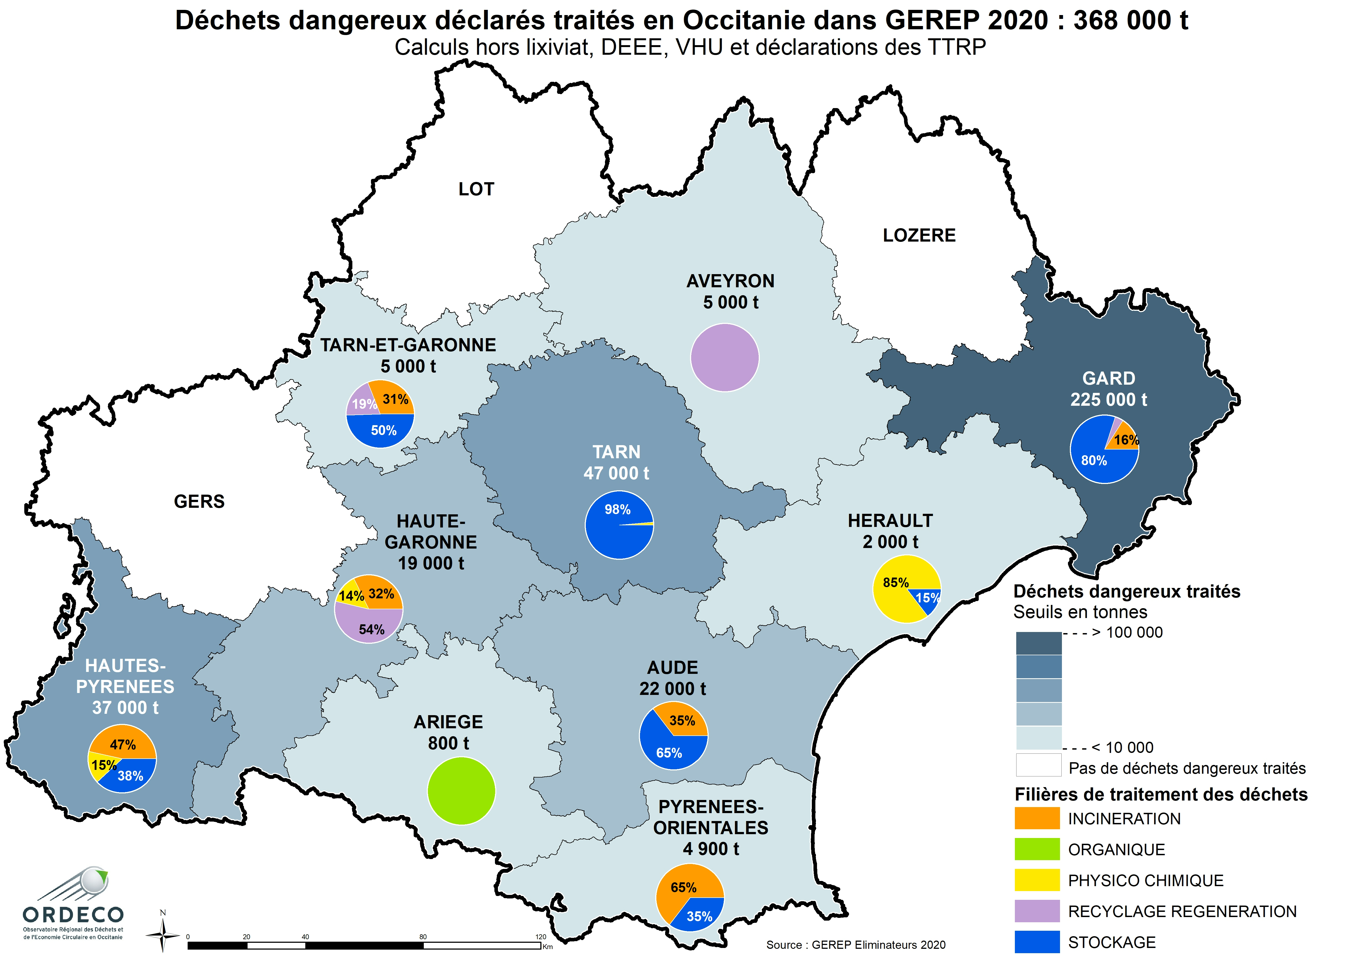 Modes de traitement des DD traités par département en Occitanie en 2020